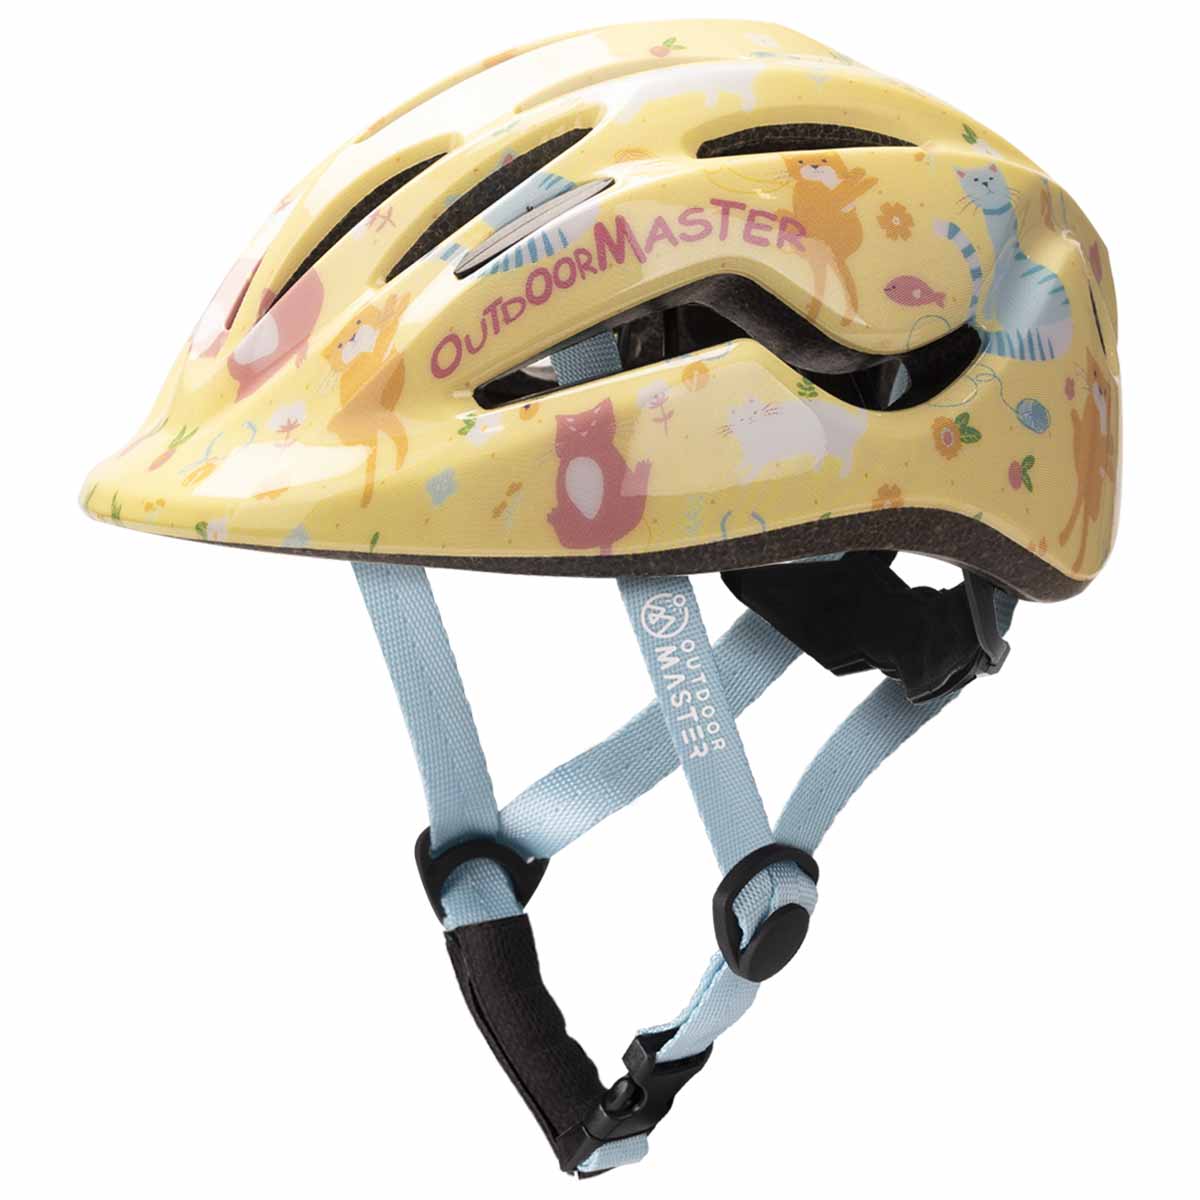 SAIGA Skateboard & Bike Helmets for Kids Toddler